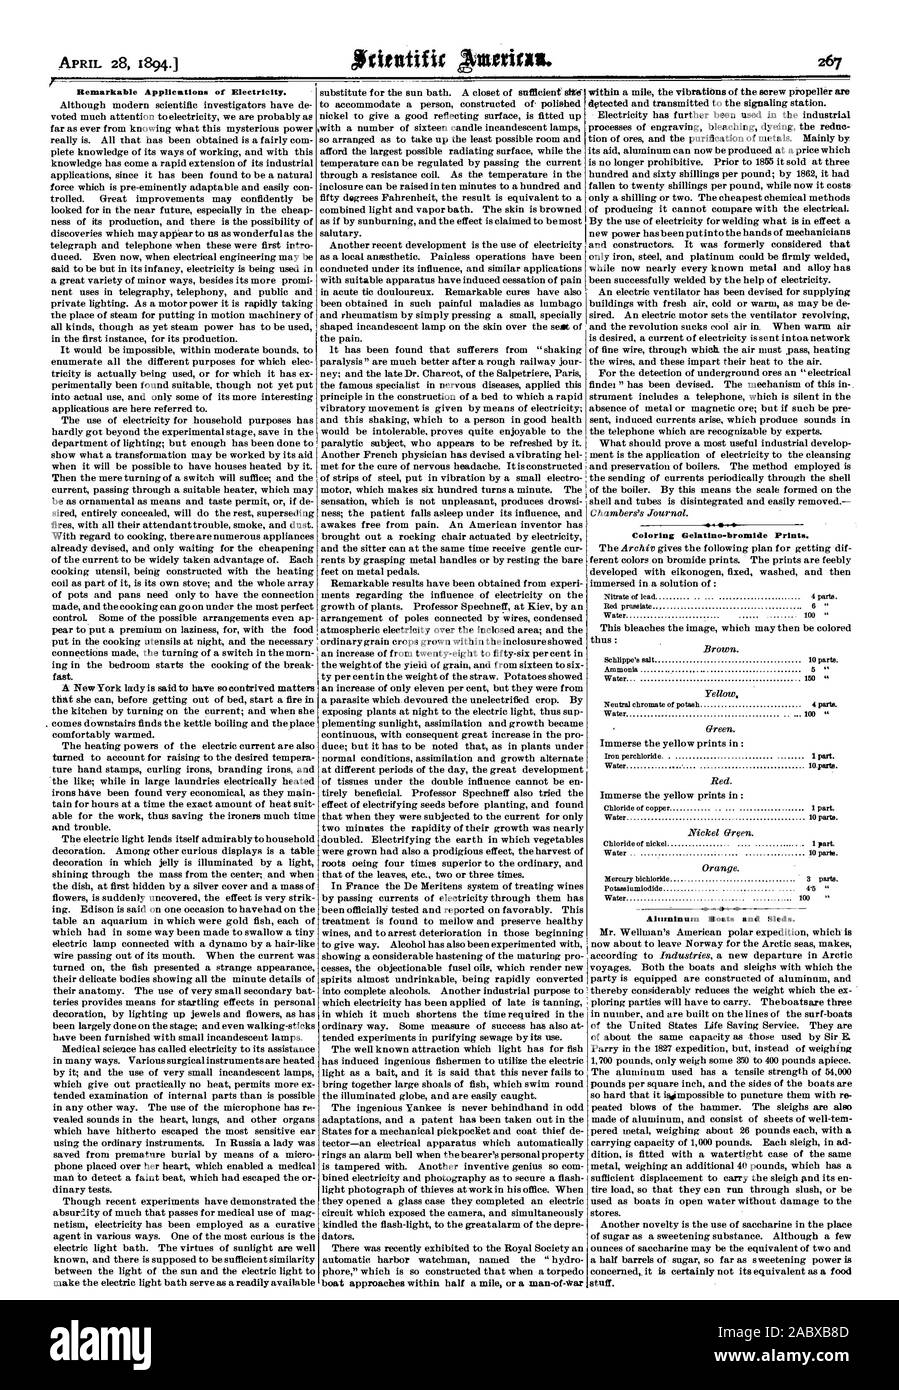 Applications remarquables de l'électricité. Gelatino-bromure à colorier imprime. Bateaux en aluminium et de traîneaux., Scientific American, 1894-04-28 Banque D'Images